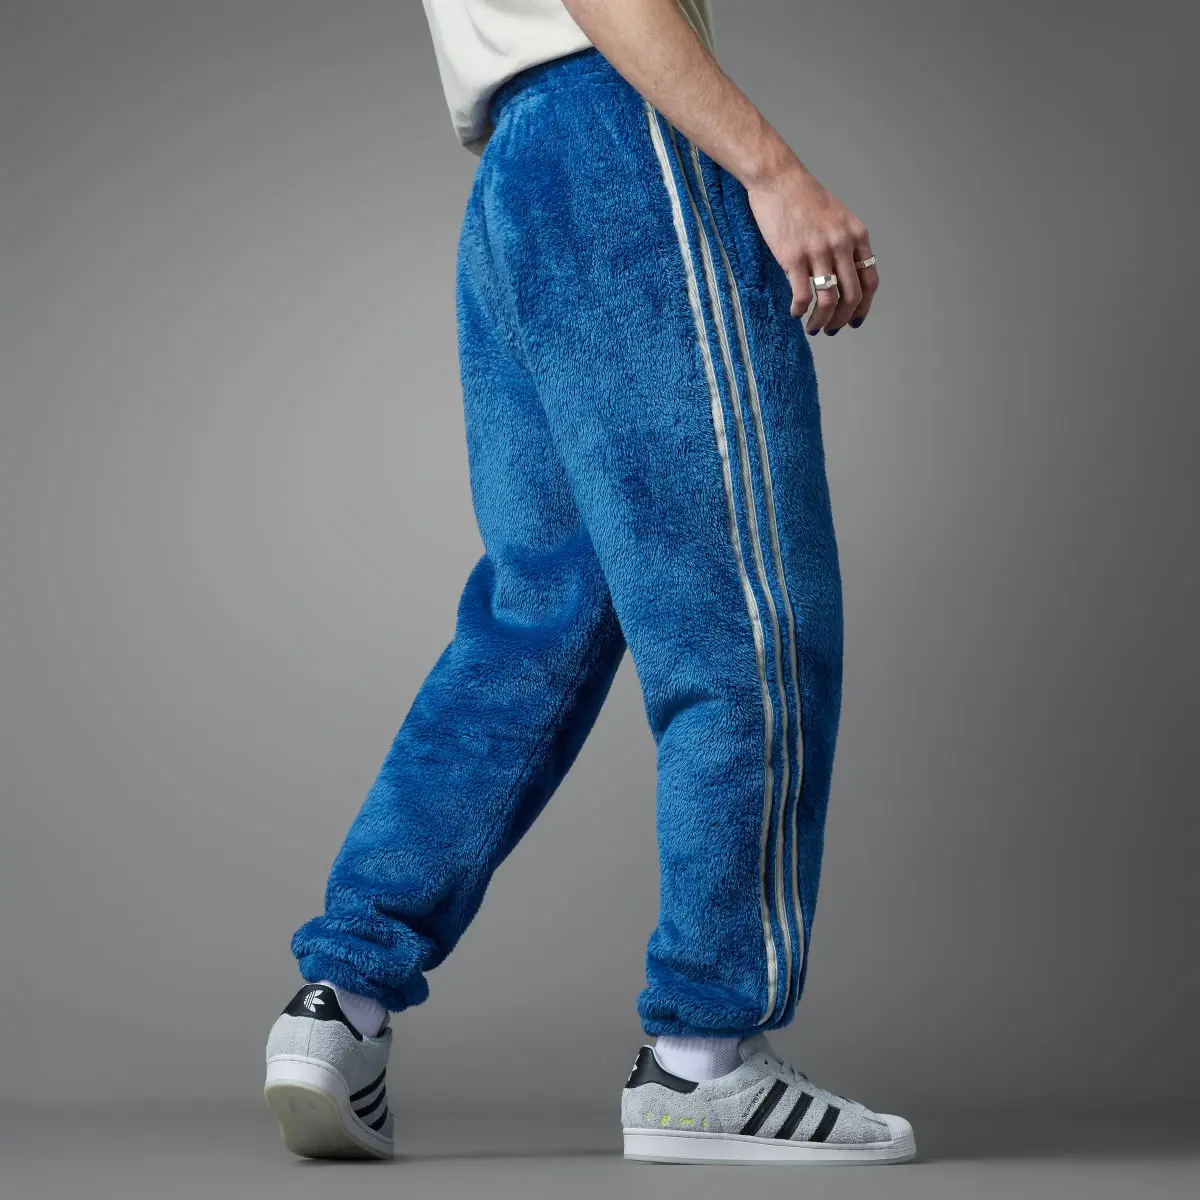 Adidas Indigo Herz Fur Pants. 2